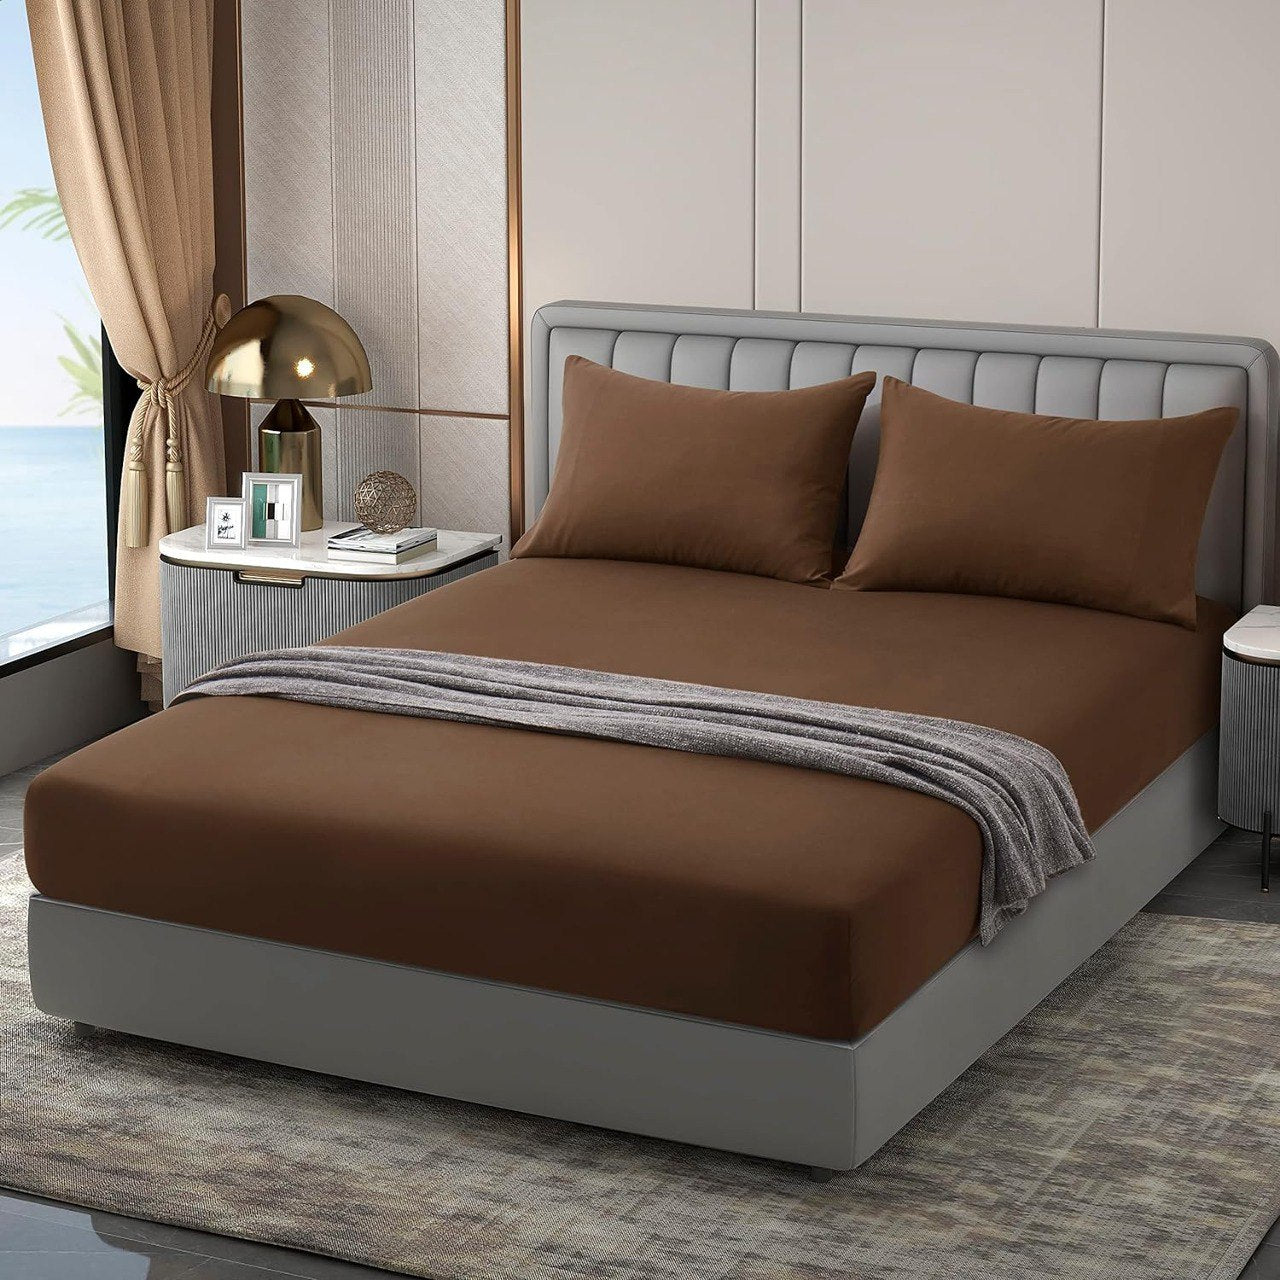 Rehaussez l'aspect de votre chambre en utilisant notre collection de linge de lit de qualité supérieure.